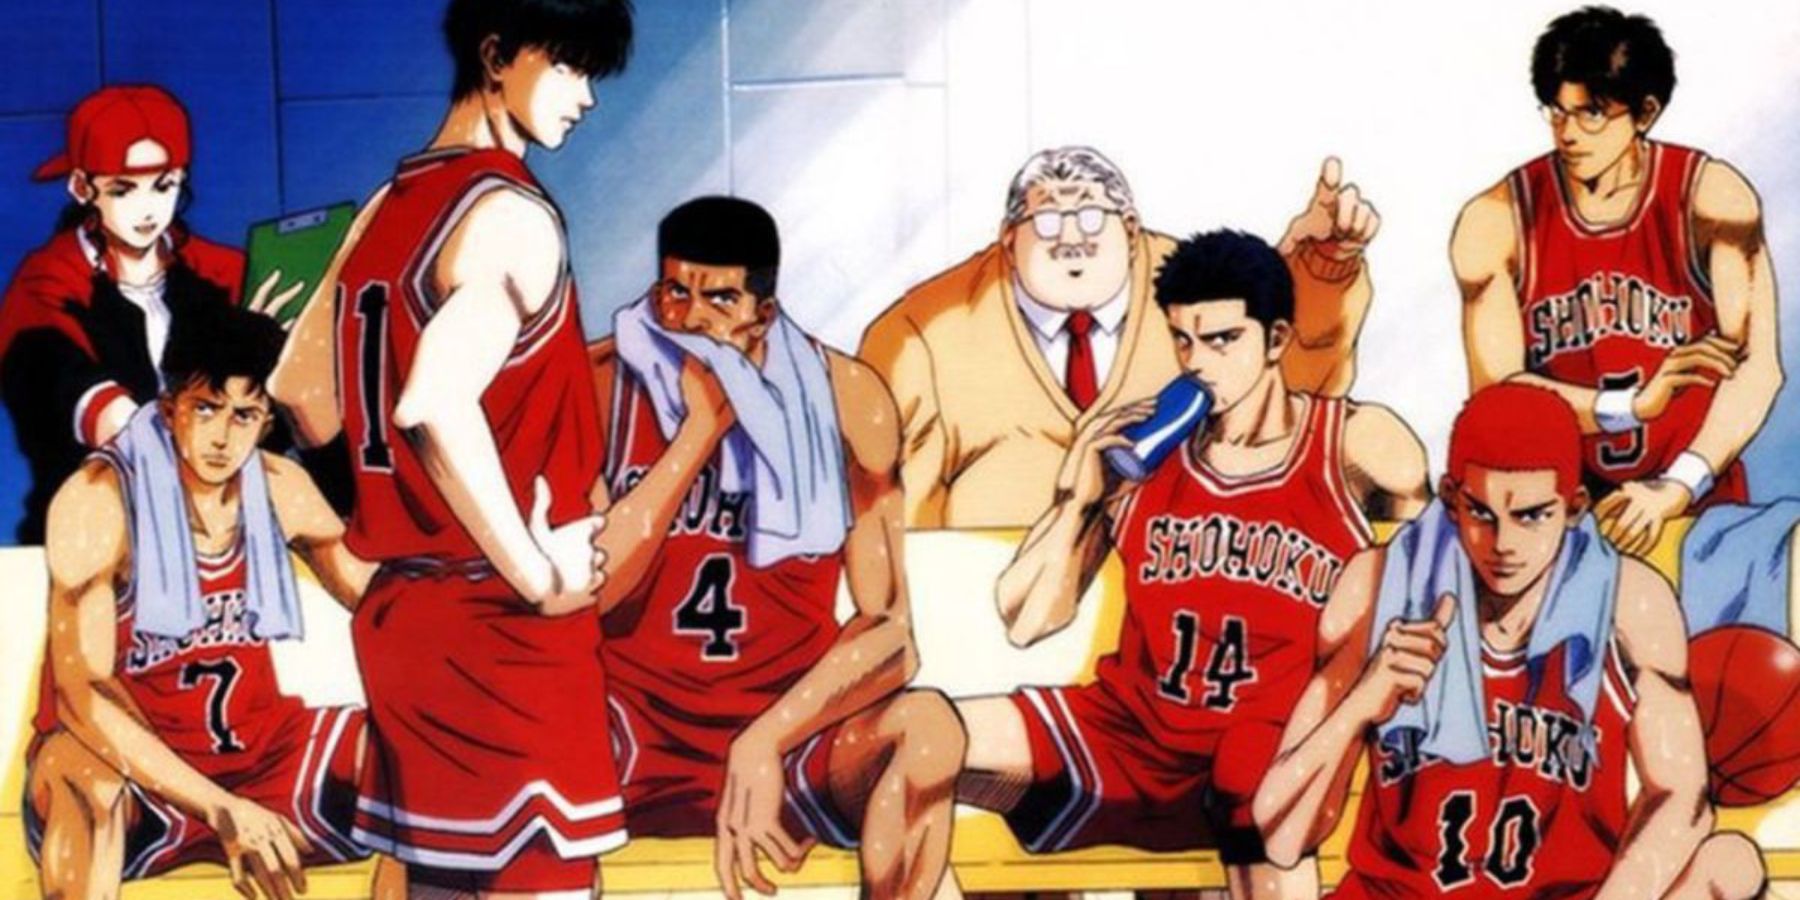 Slam Dunk anime team in locker room